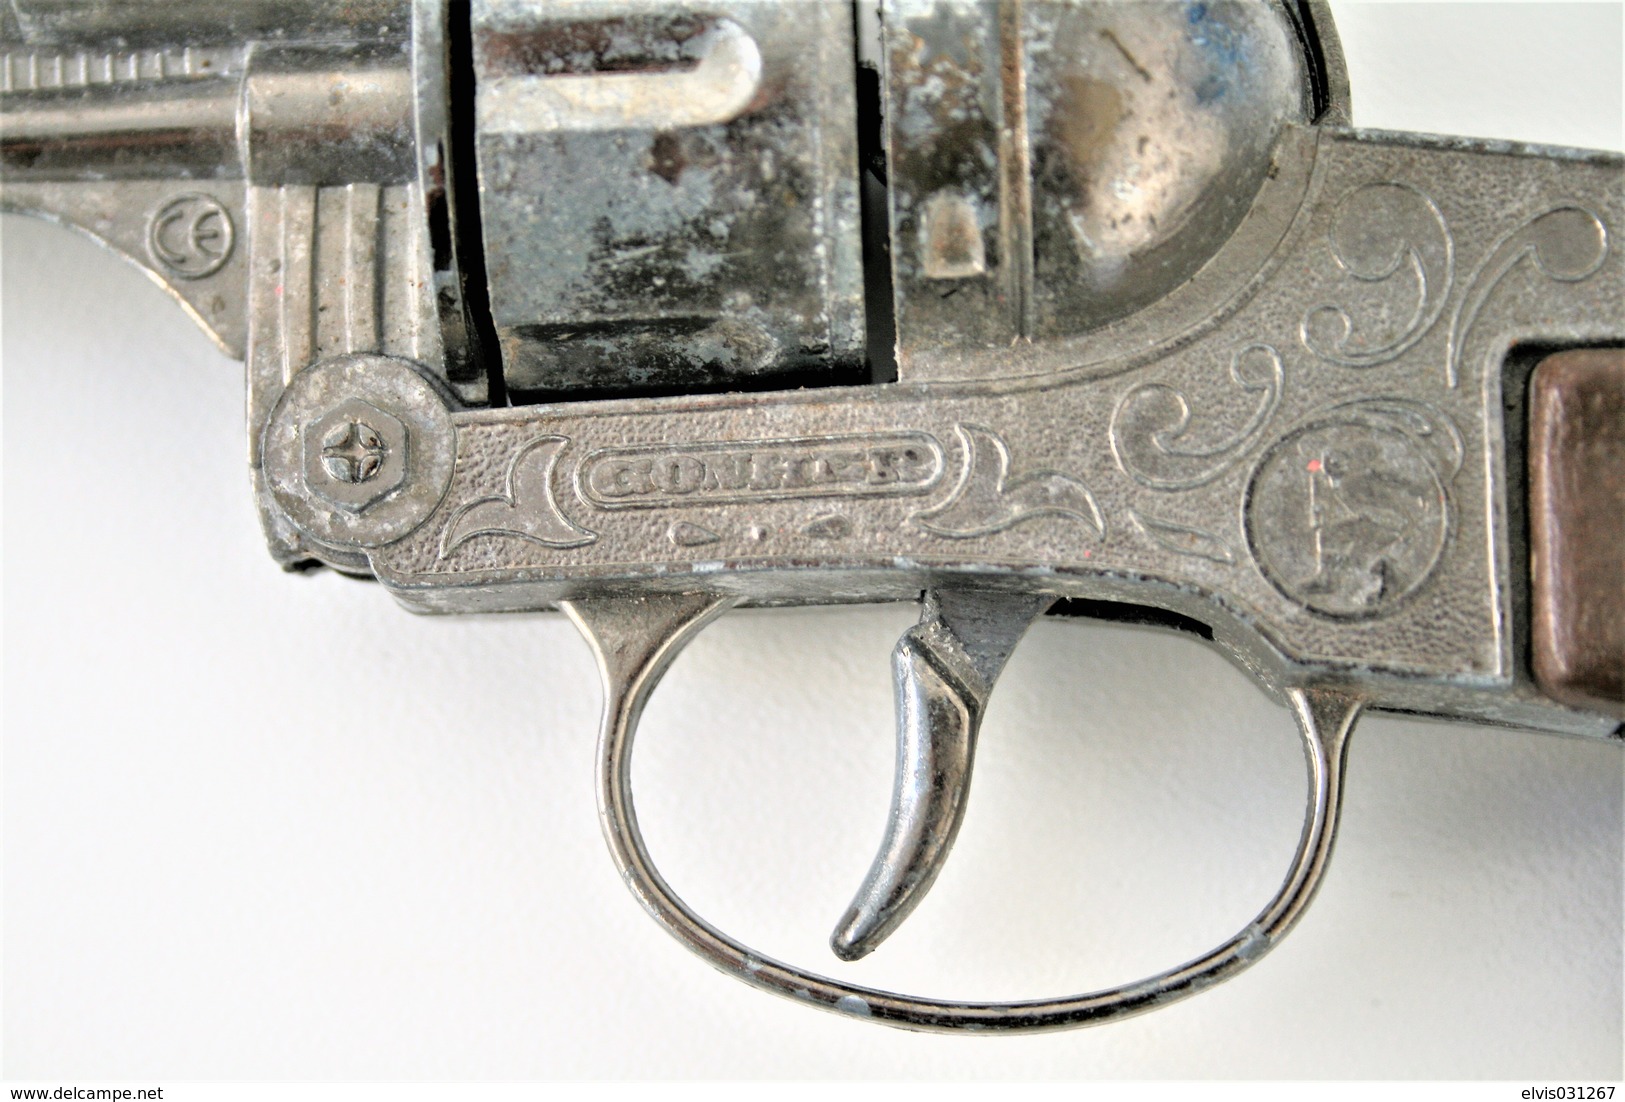 Vintage TOY GUN : GONHER NO. 122 - L=24.5cm - 19??s - Spain - keywords : Cap Gun - Cork gun - Rifle - Revolver - Pistol